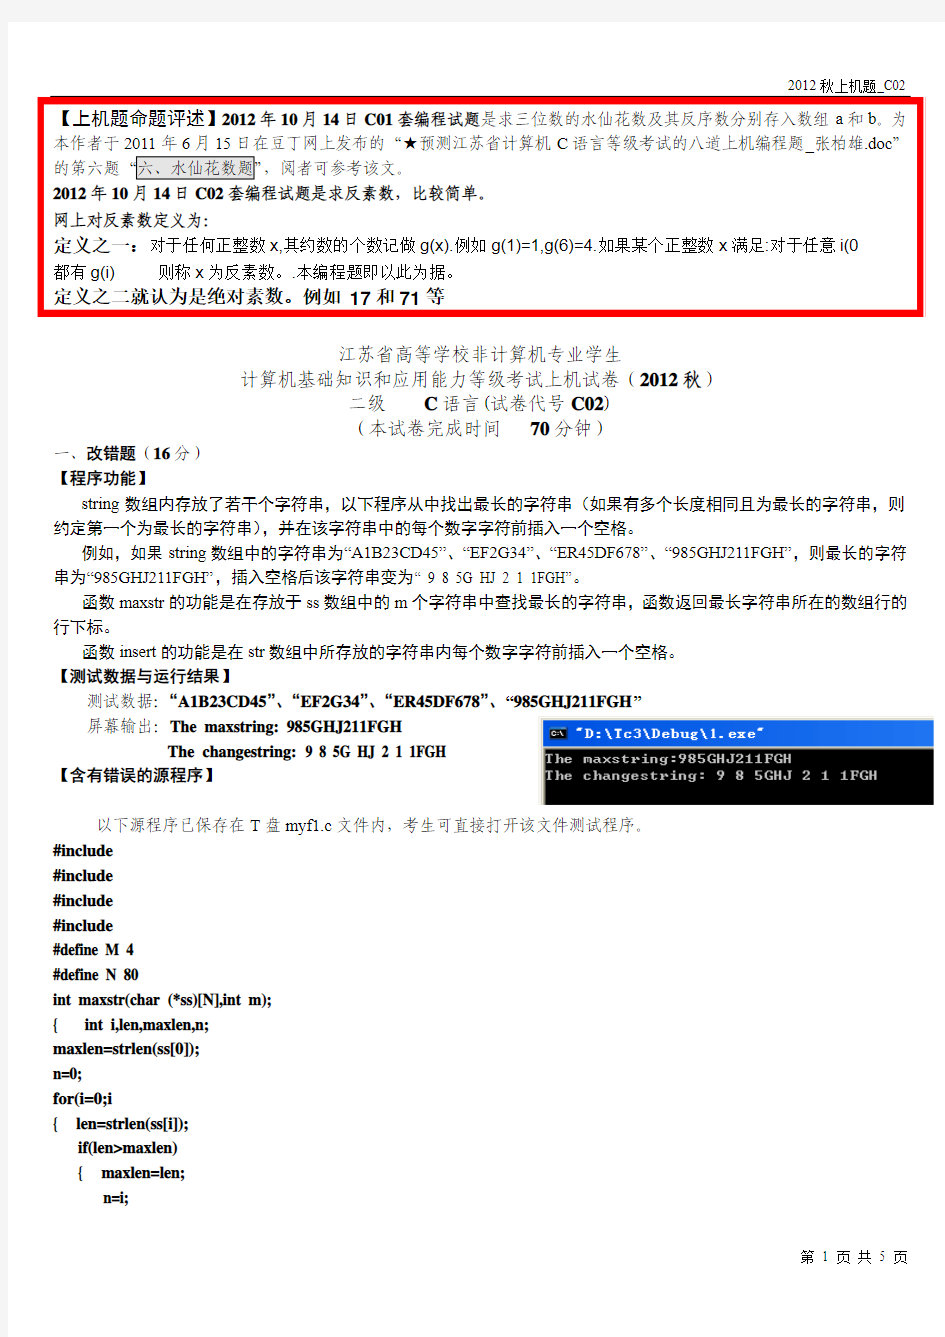 2012年10月14日江苏省高校计算机等级考试二级C语言上机题(C02)及其解答_张柏雄